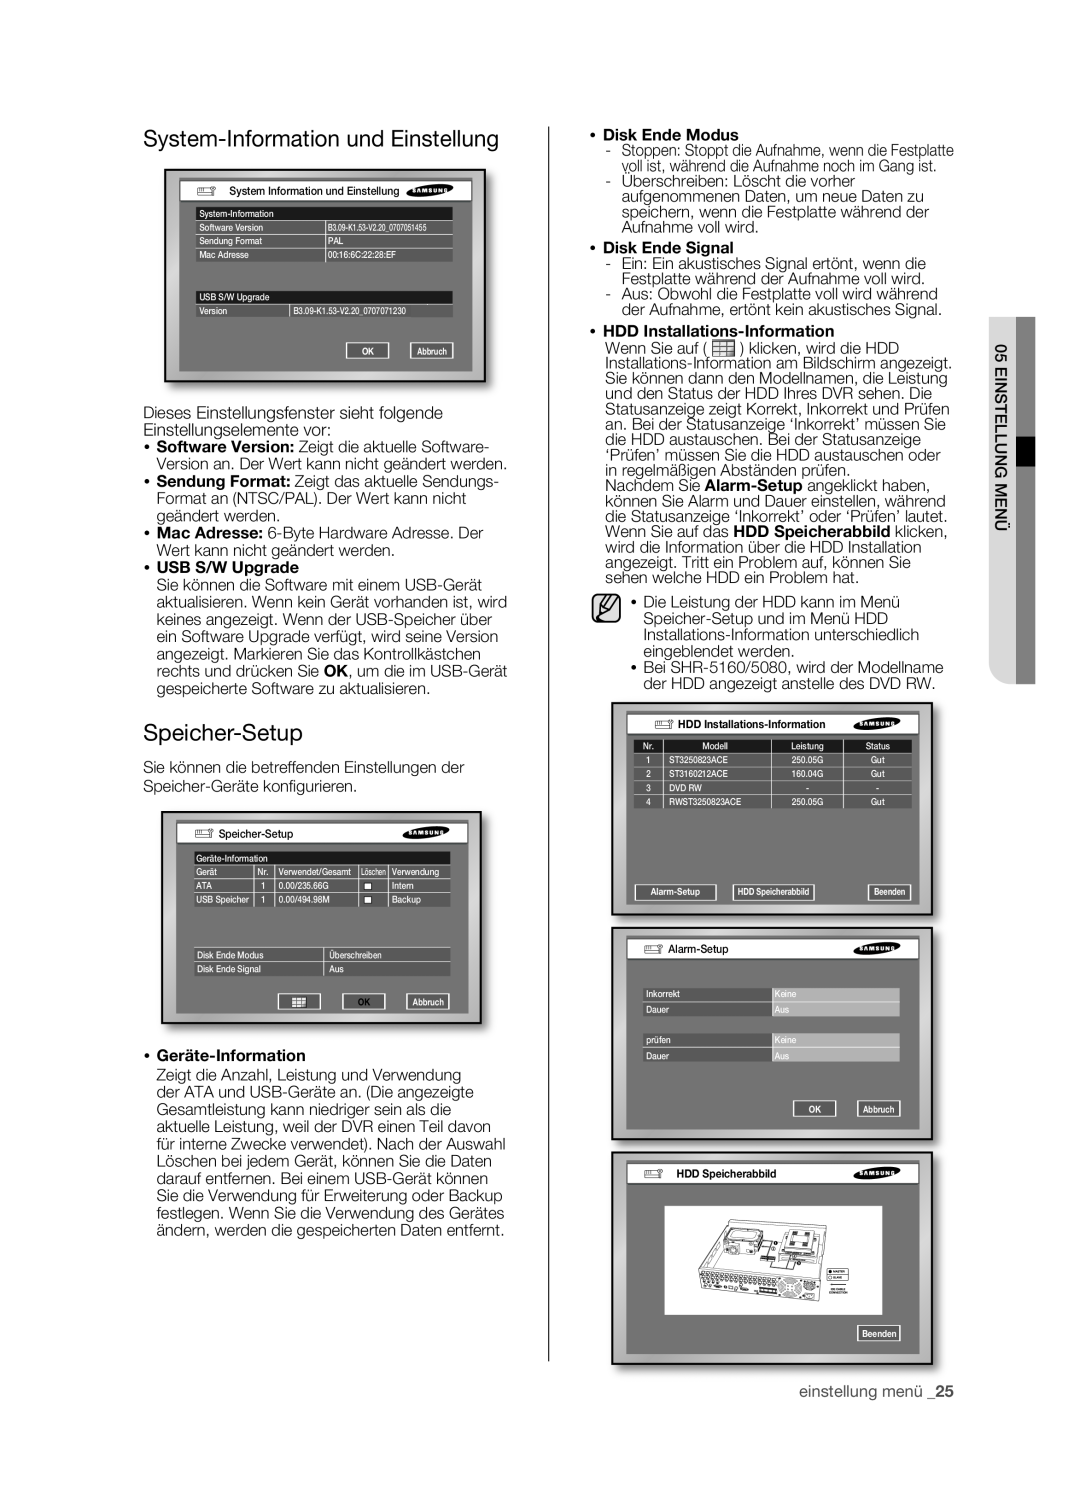 Samsung SHR-5082P, SHR-5160P System-Information und Einstellung, Speicher-Setup,  USB S/W Upgrade,  Geräte-Information 